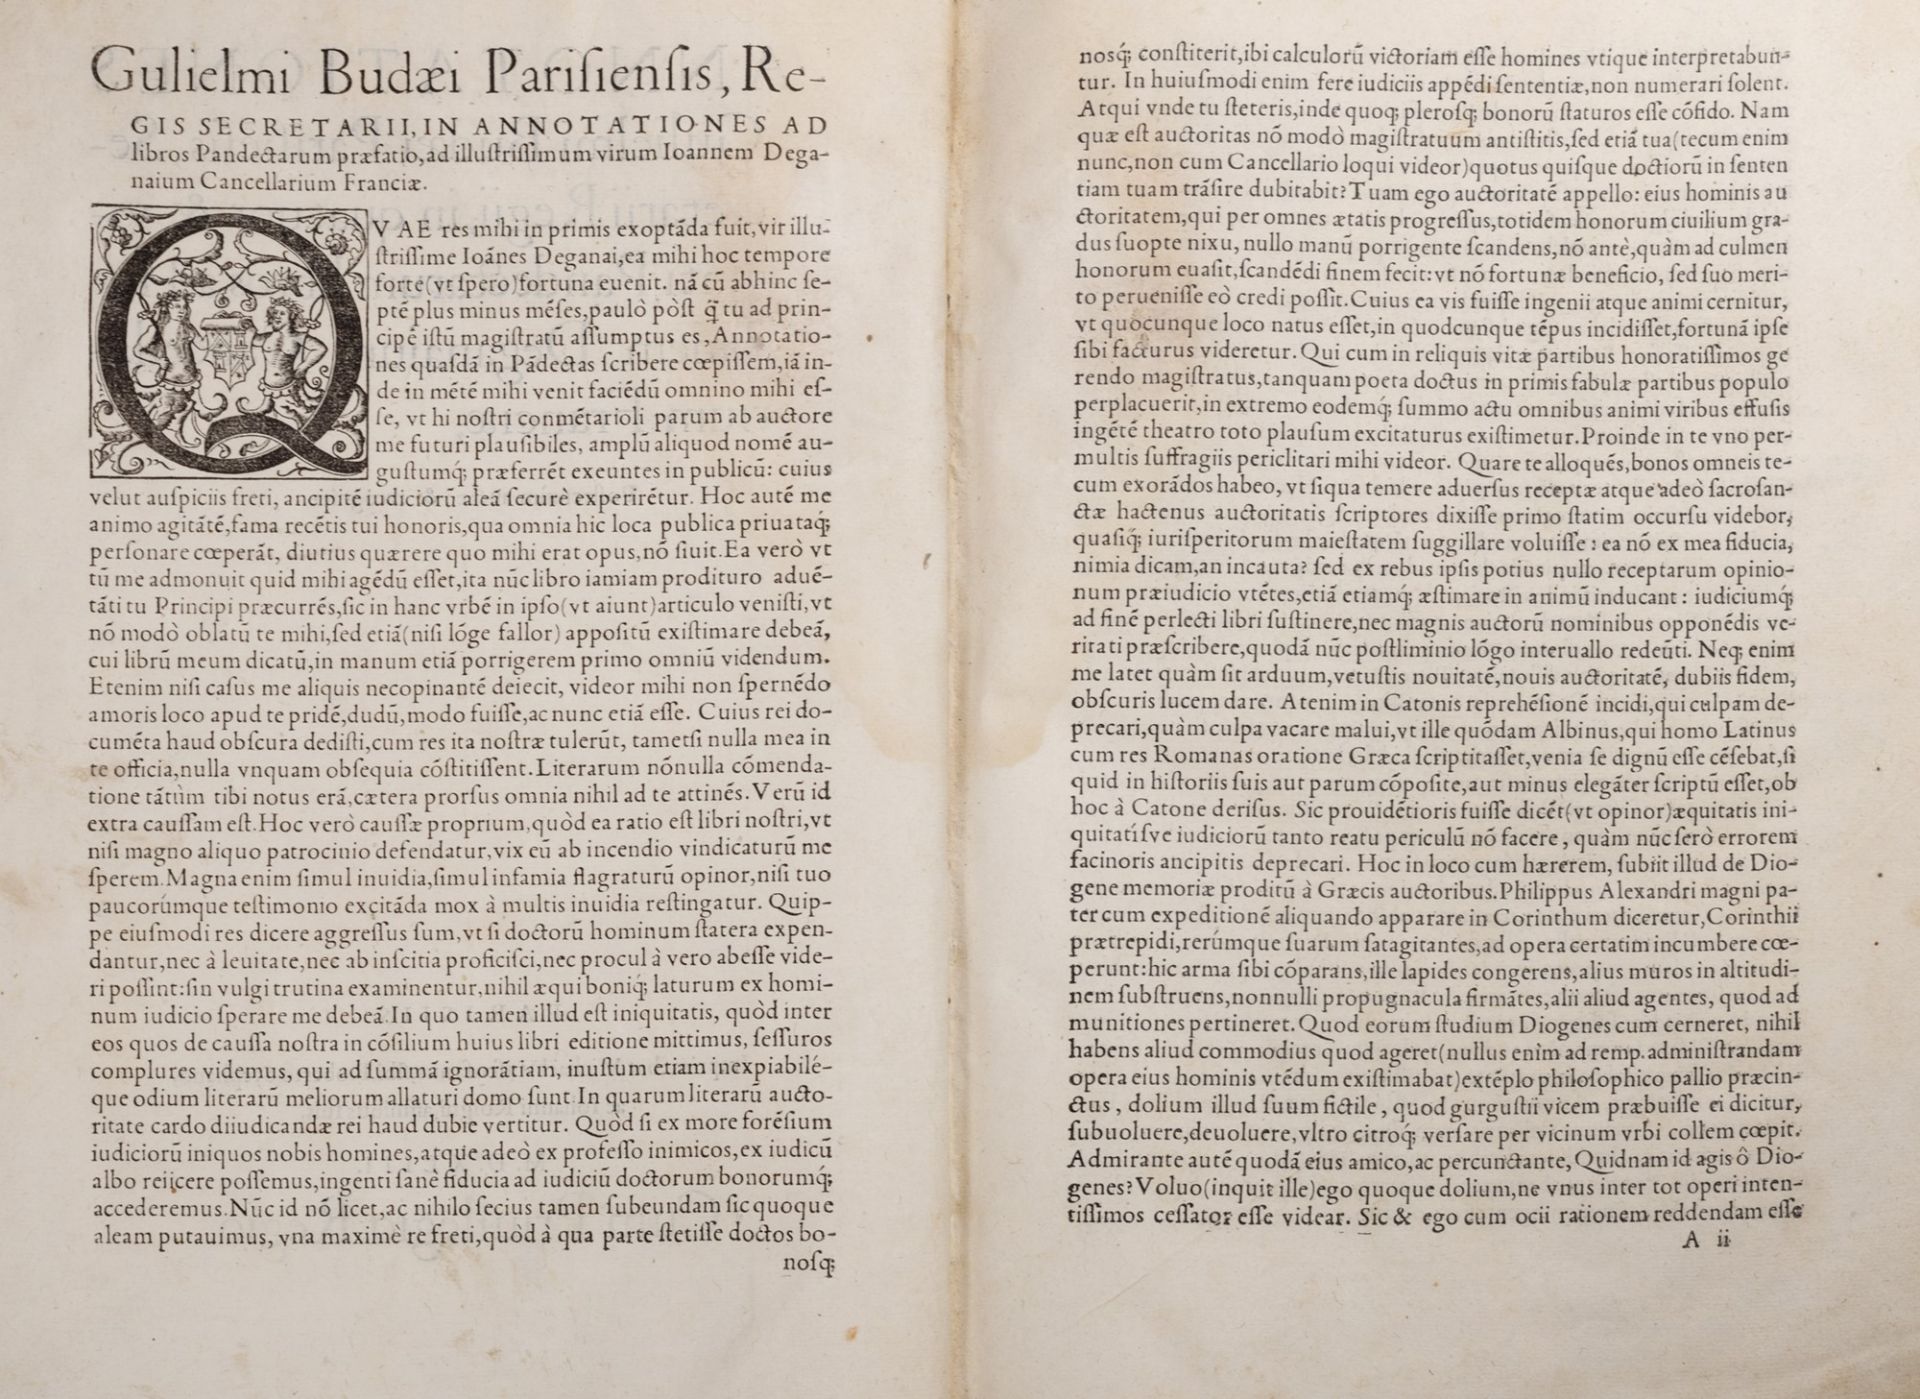 Budé, Guillaume - Annotationes Gulielmi Budaei Parisiensis, secretarii regii, in quatuor & viginti P - Image 2 of 2